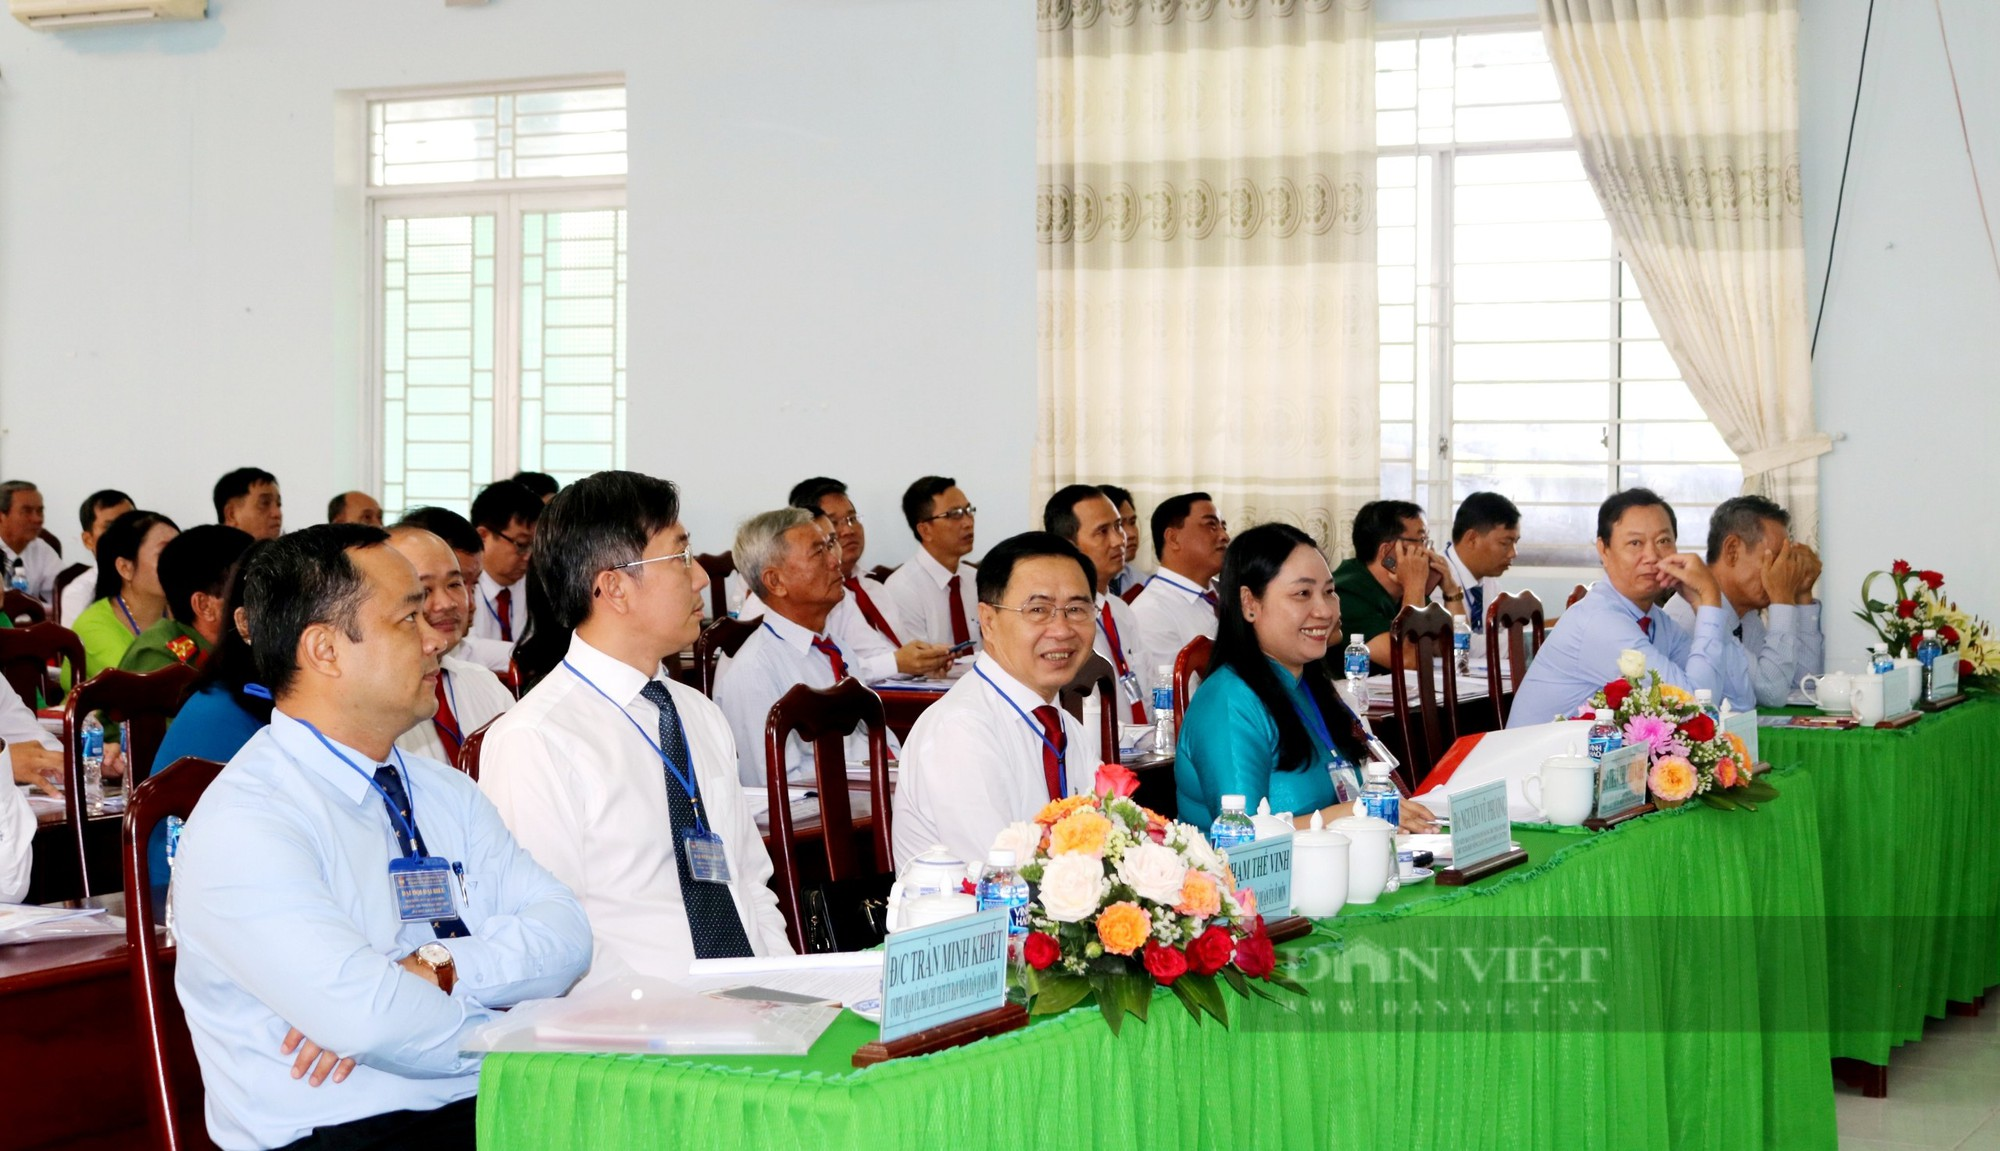 Cần Thơ: Đại hội Hội Nông dân quận Ô Môn, ông Trương Văn Phúc được bầu chức Chủ tịch - Ảnh 1.